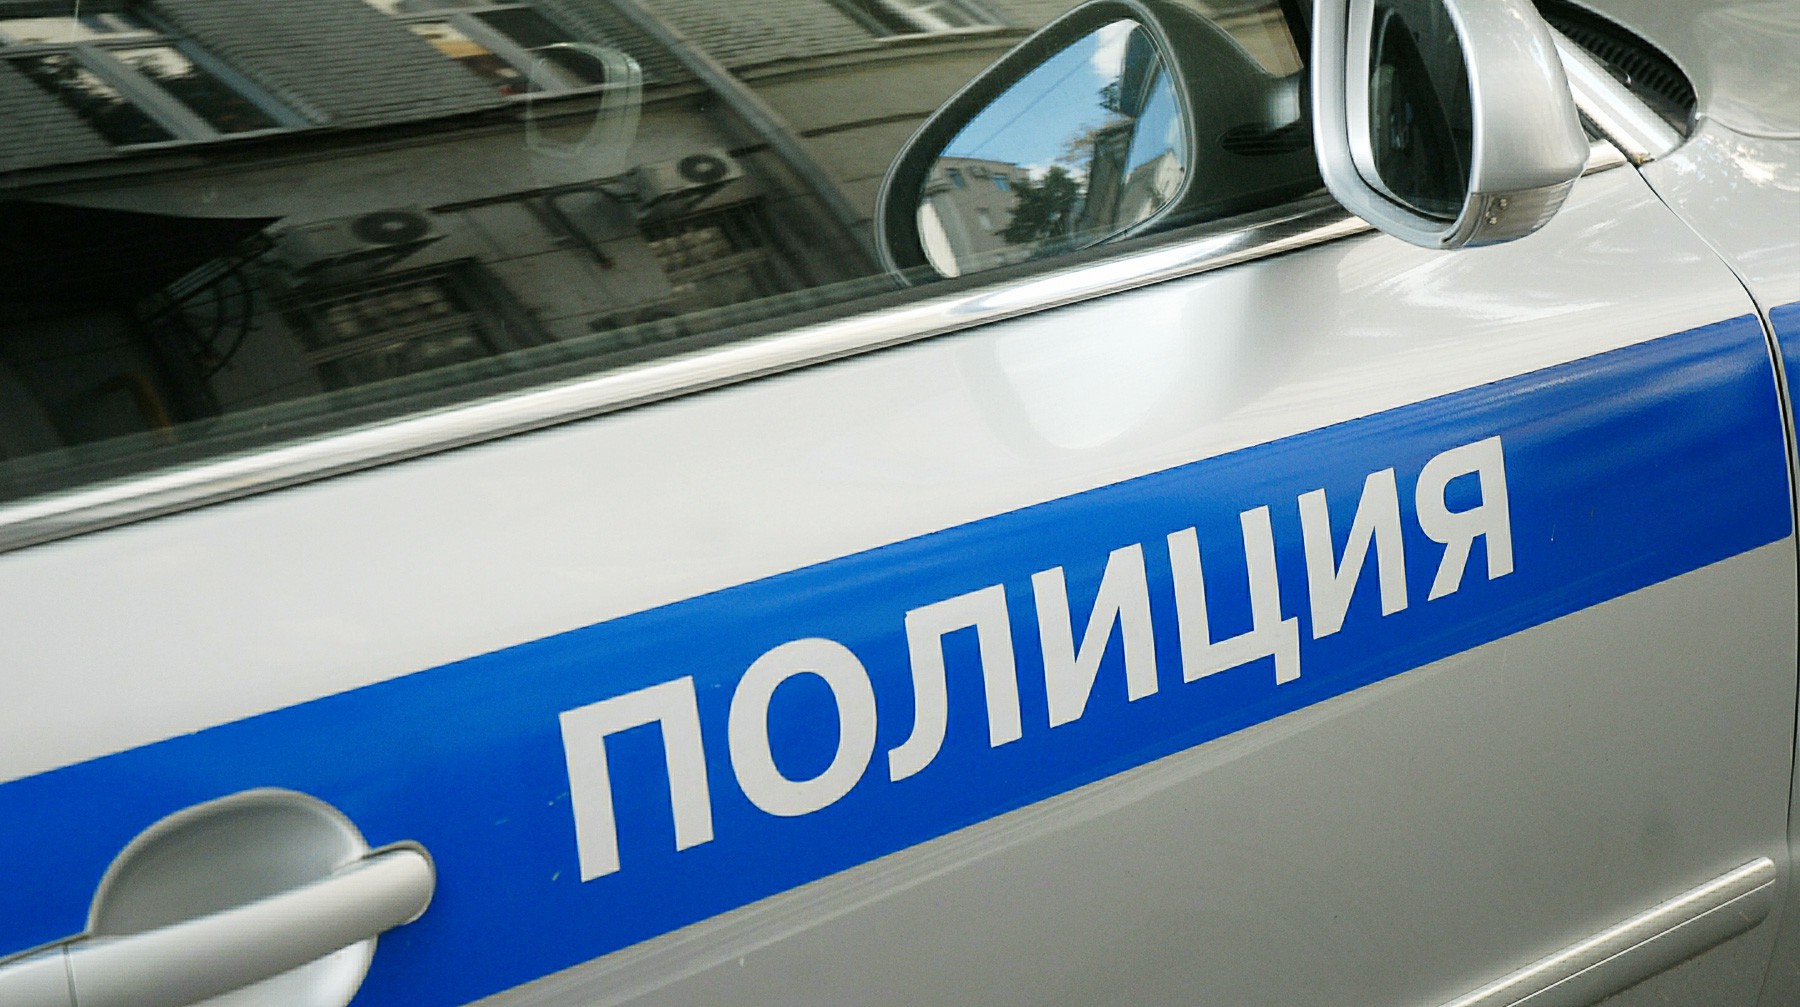 Неизвестные украли 10 миллионов рублей из автомобиля, врезавшегося в КПП в Домодедово